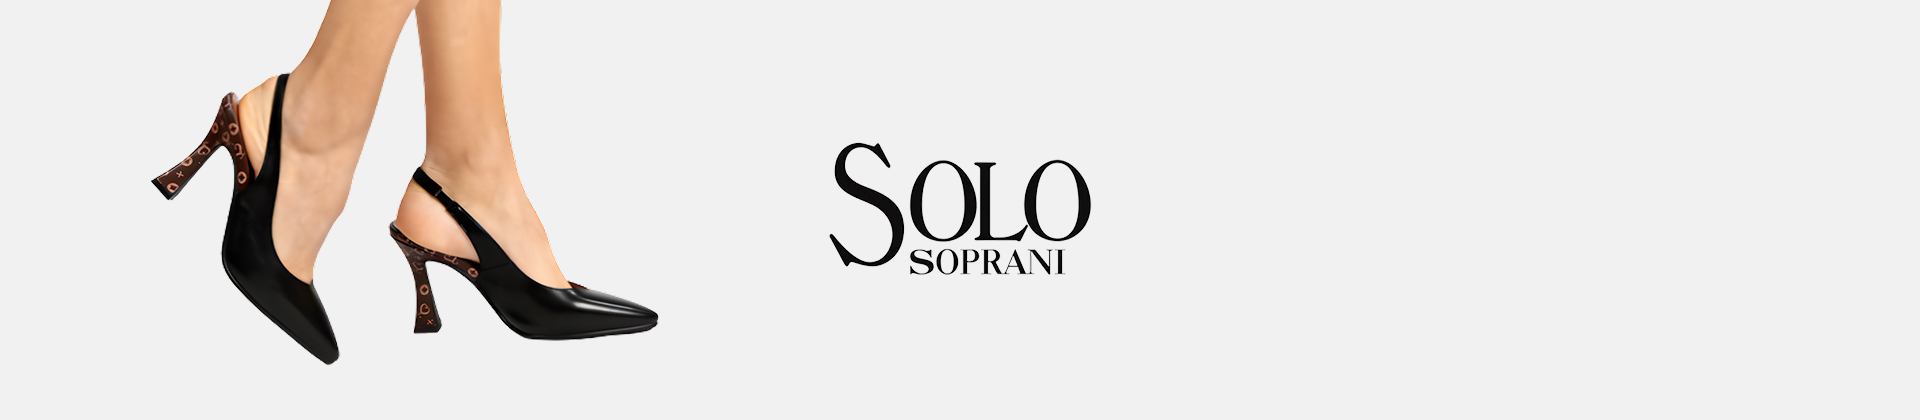 Solo Soprani jewel bags sale online!